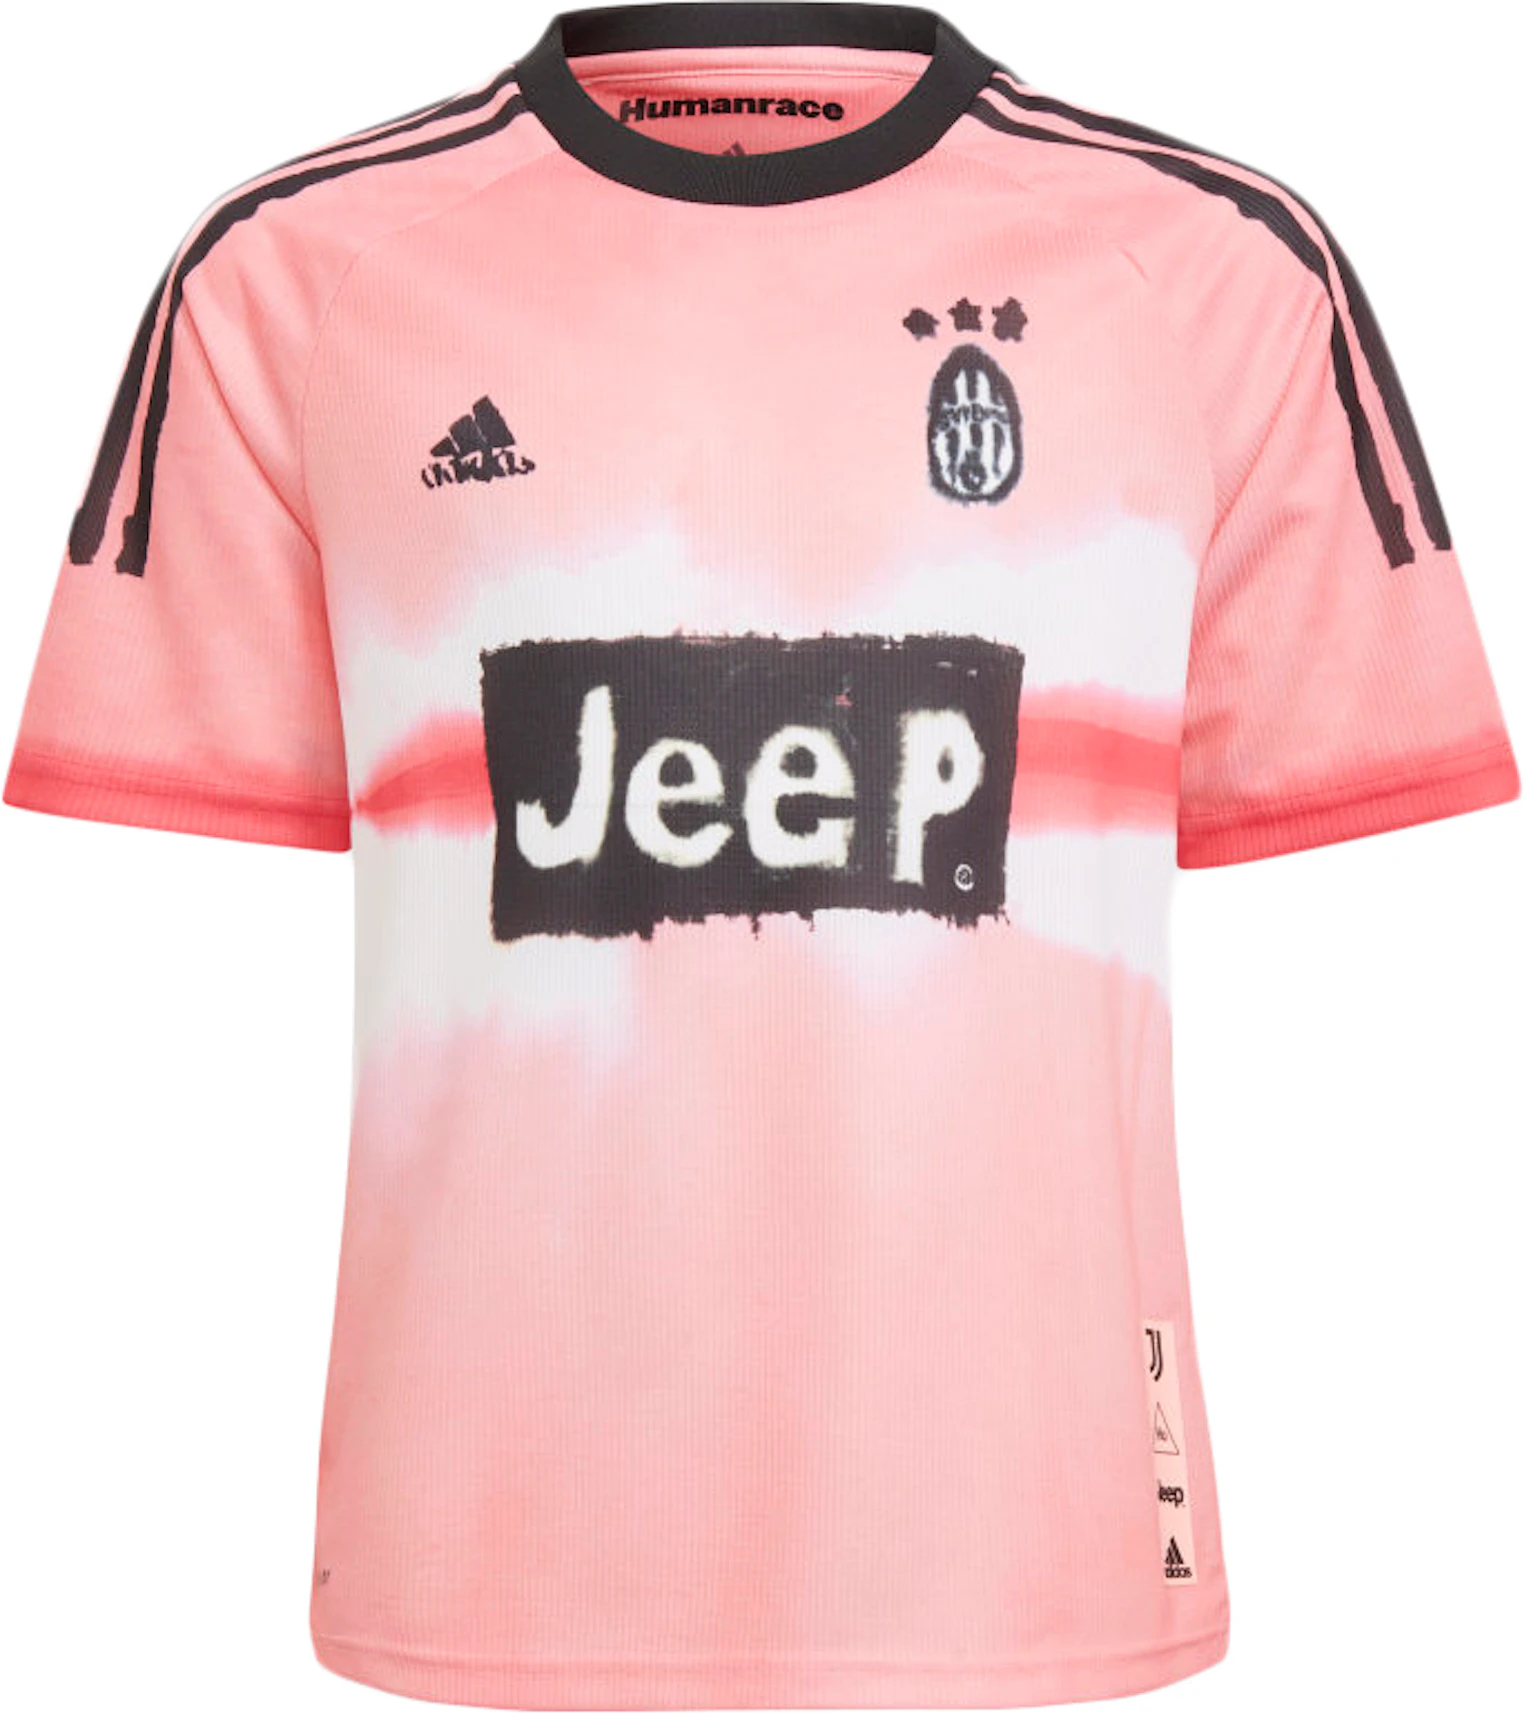 vergroting plastic Bouwen adidas Juventus Human Race Kids Jersey Glow Pink/Black - FW20 - US